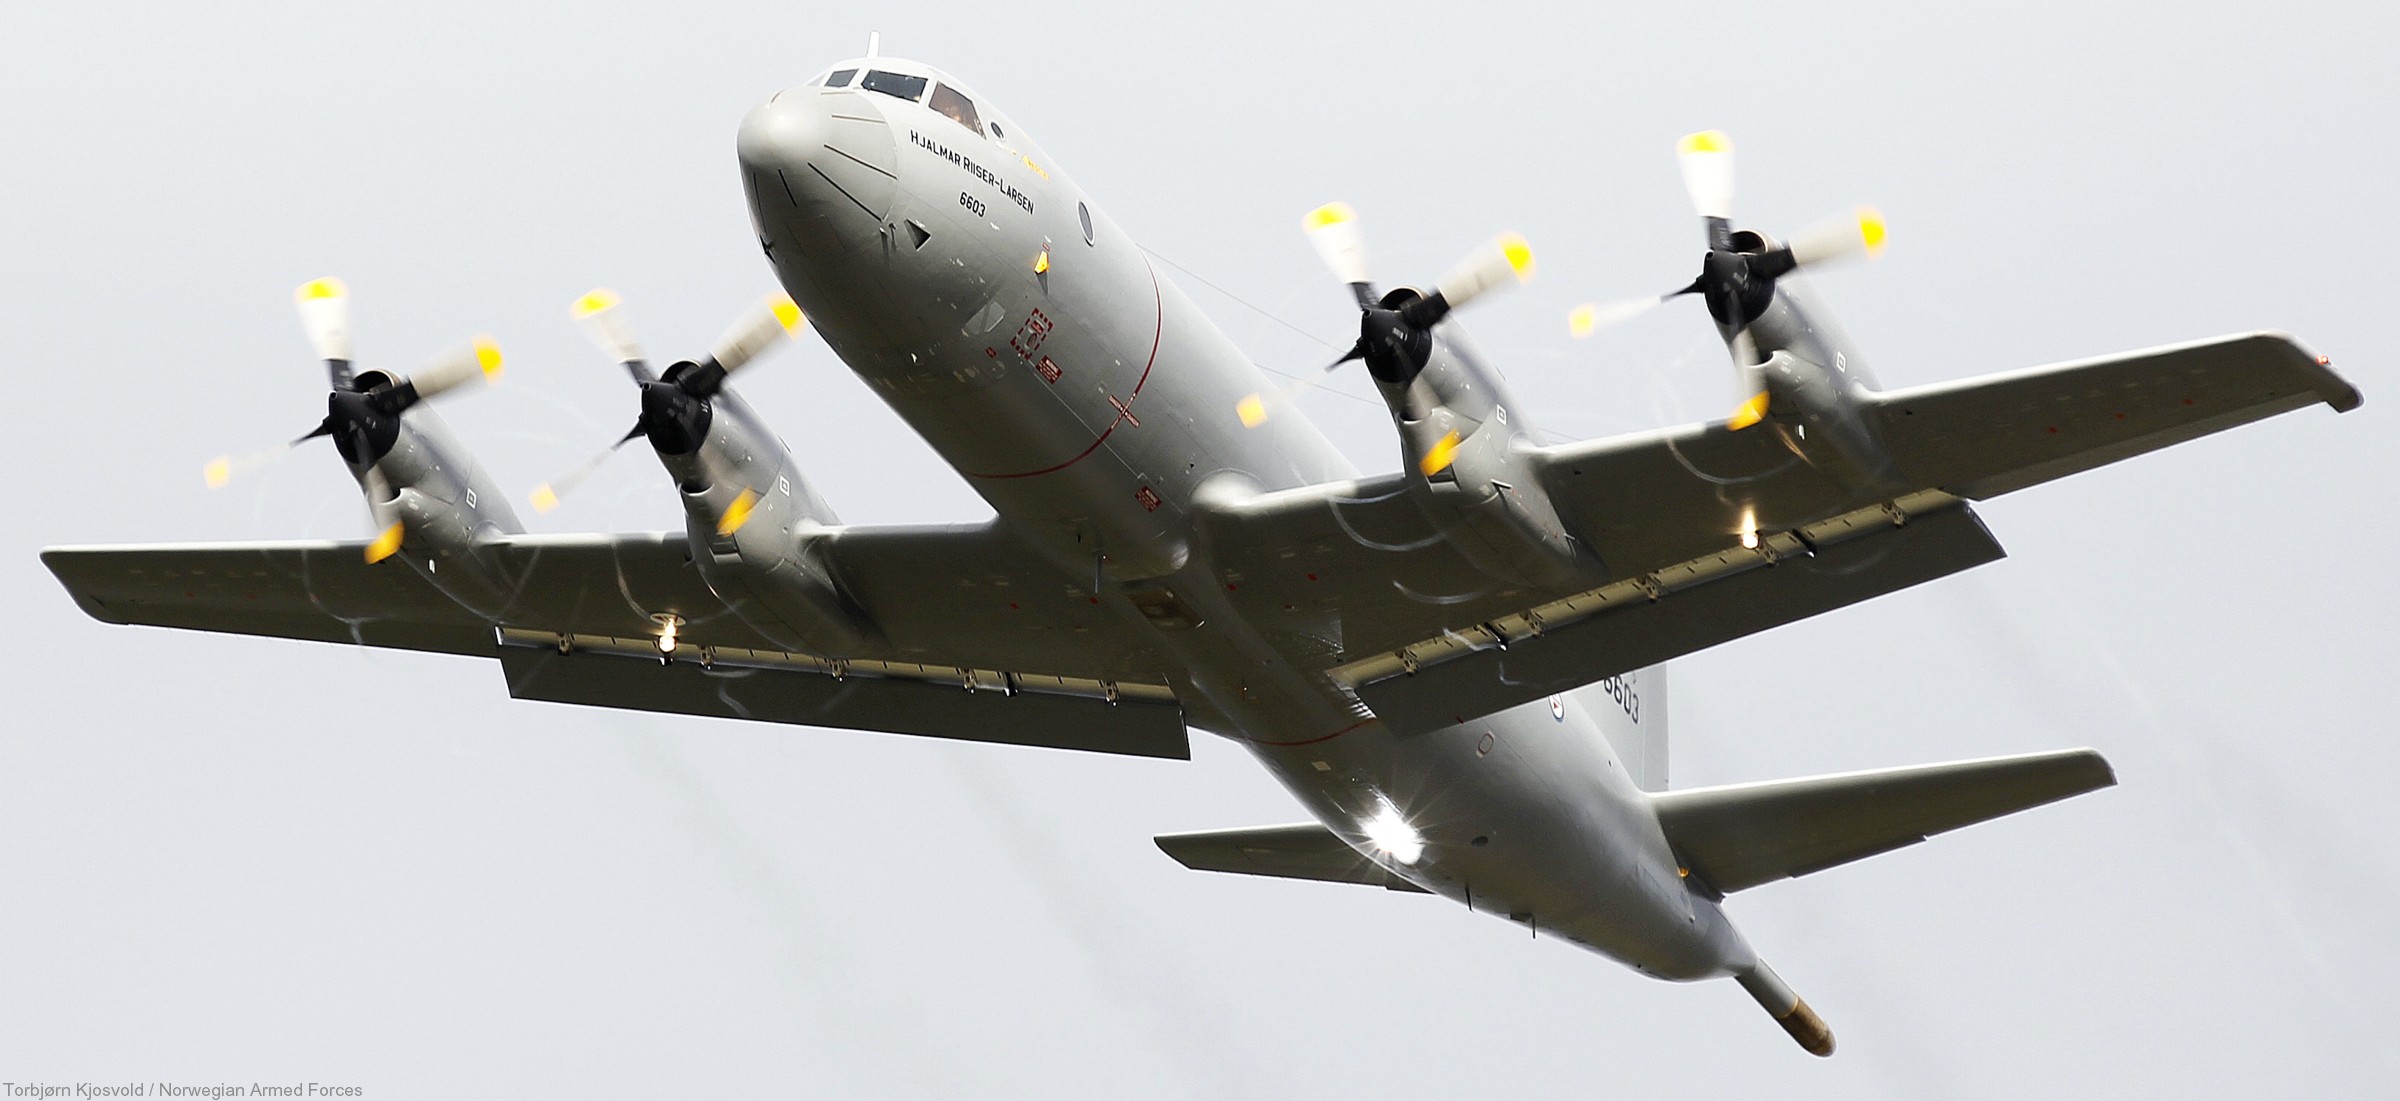 lockheed p-3n orion hjalmar riiser larsen 6603 patrol royal norwegian air force 02